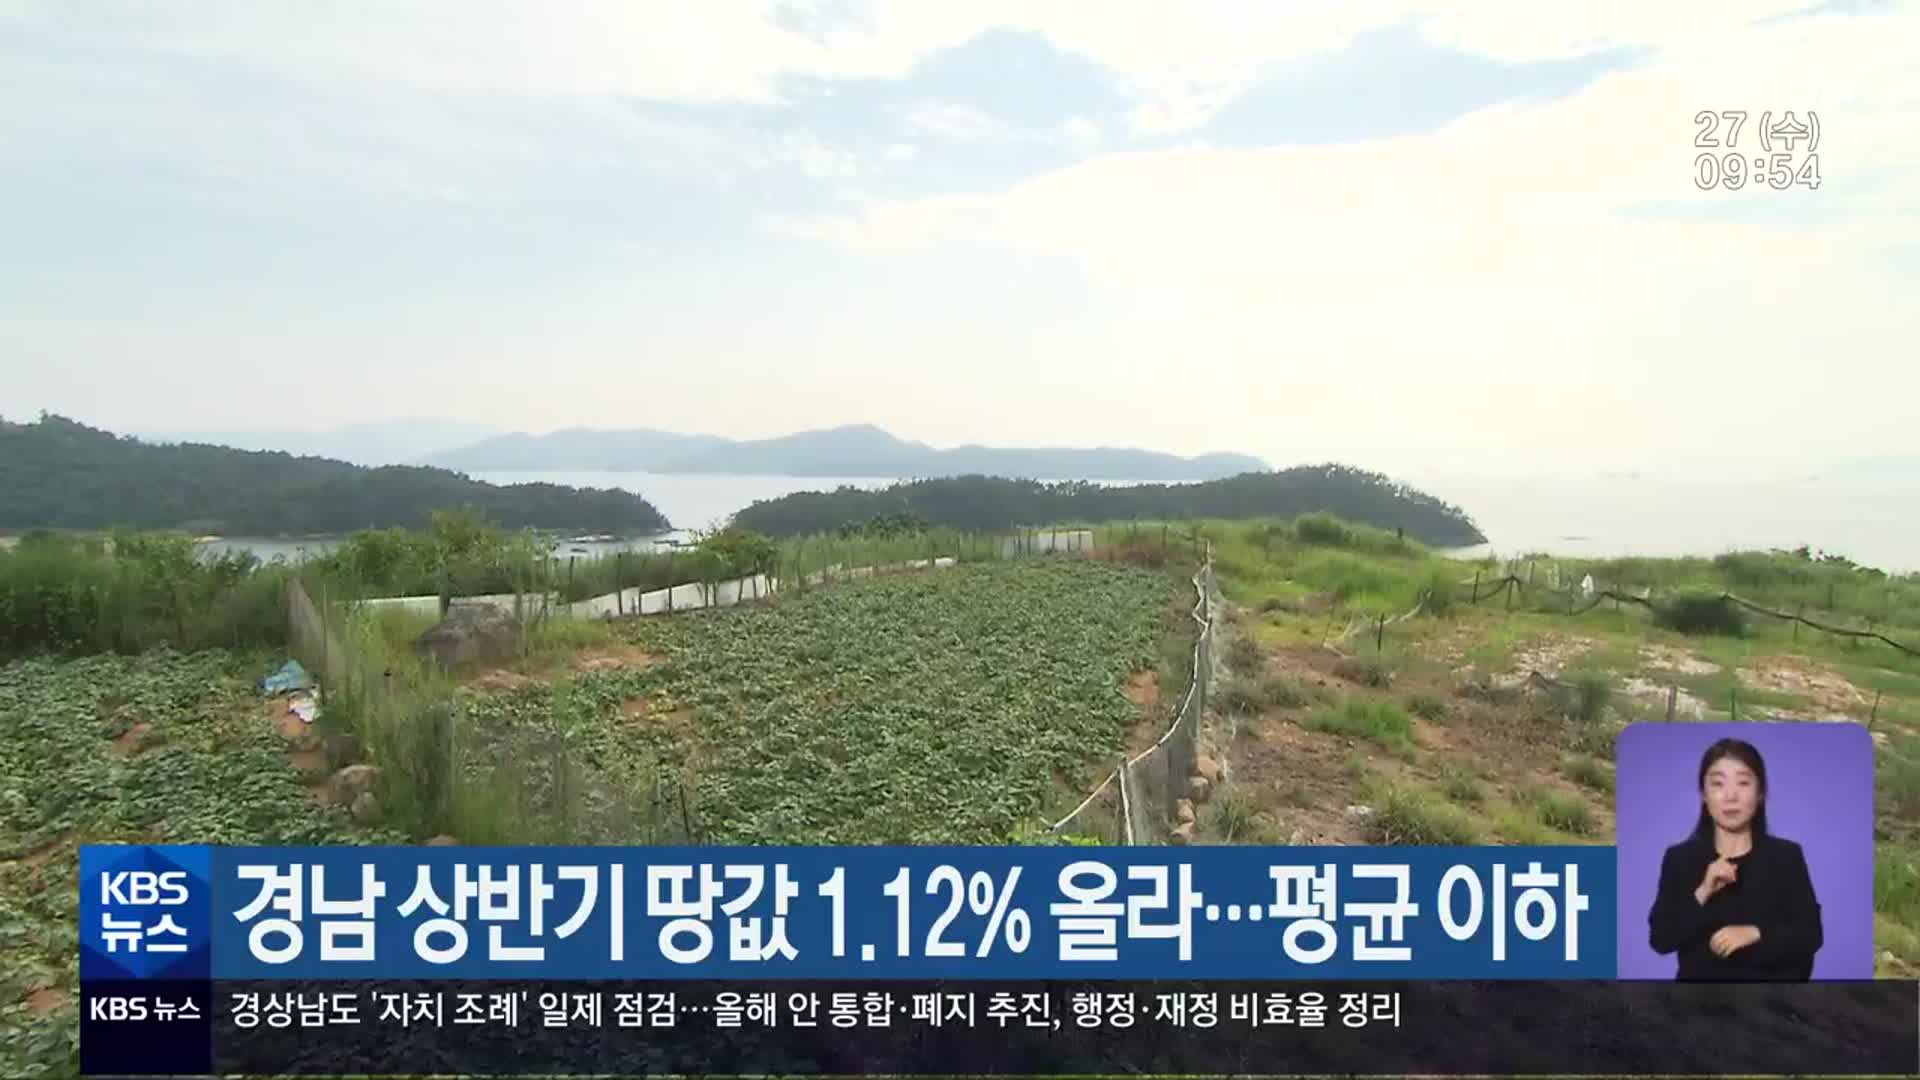 경남 상반기 땅값 1.12% 올라…평균 이하